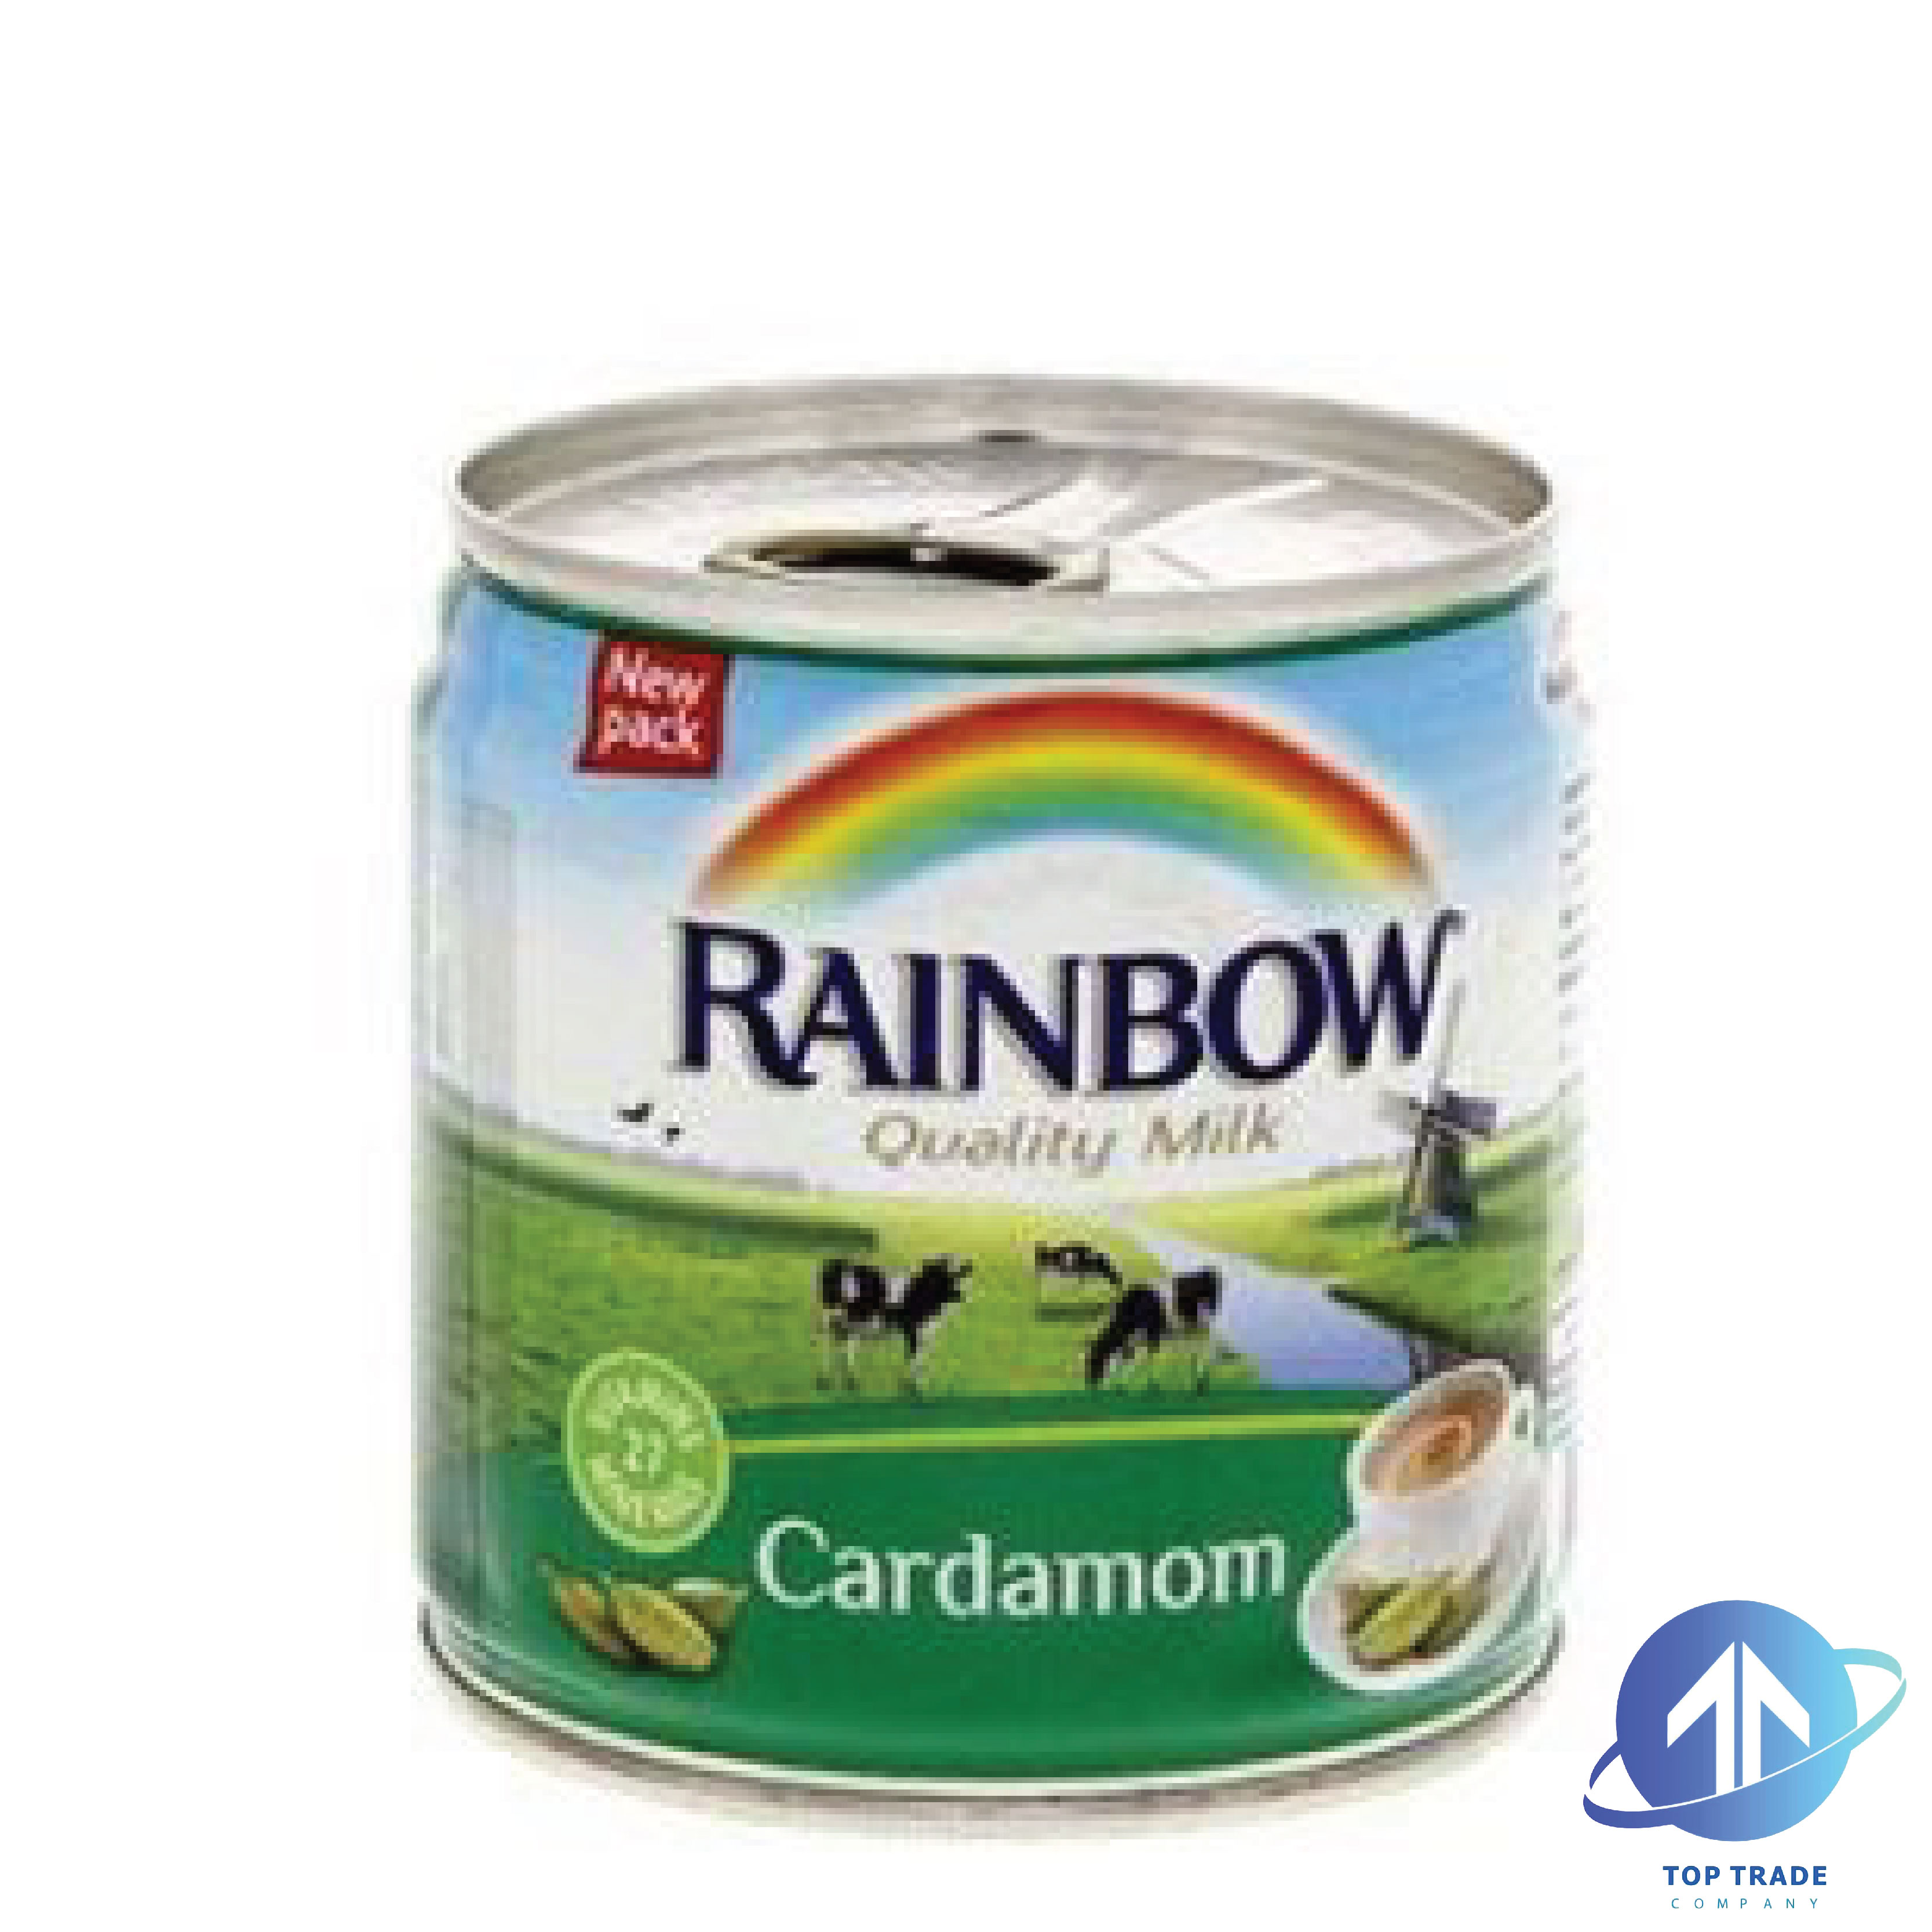 Rainbow cardamom condensed milk 170gr